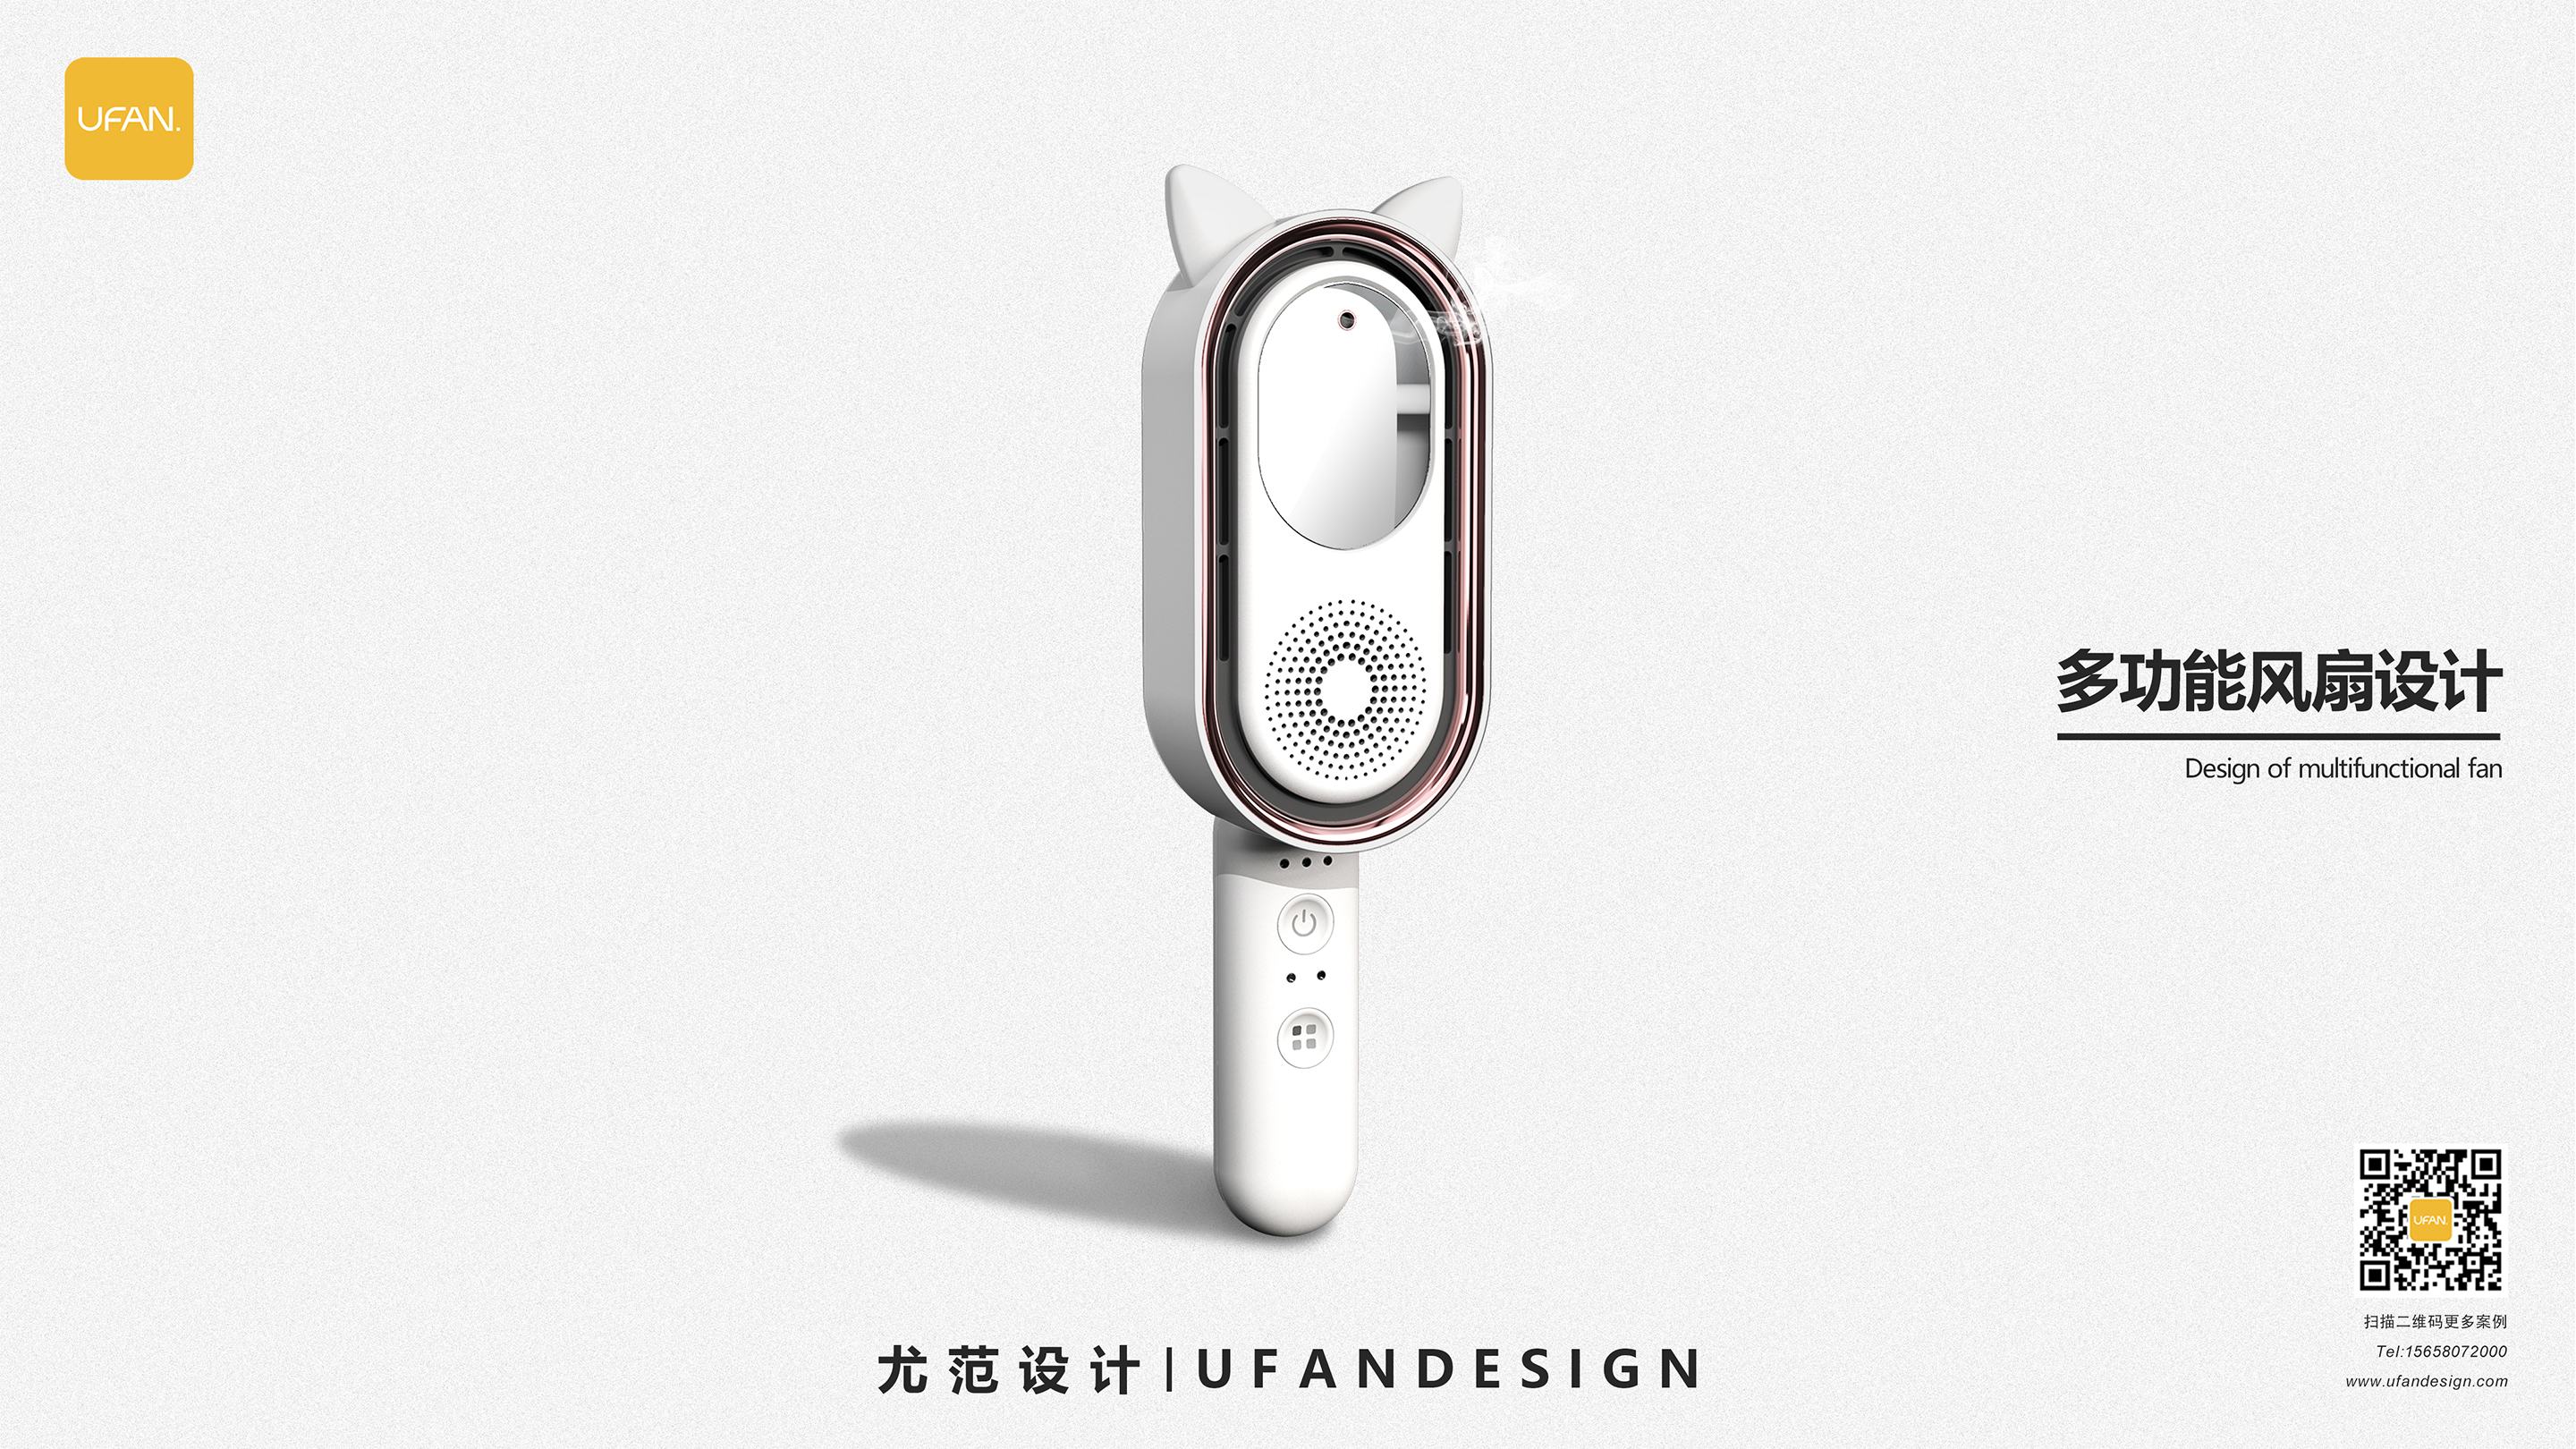 杭州尤范设计工业设计公司-小风扇设计公司-小风扇外观设计03.jpg